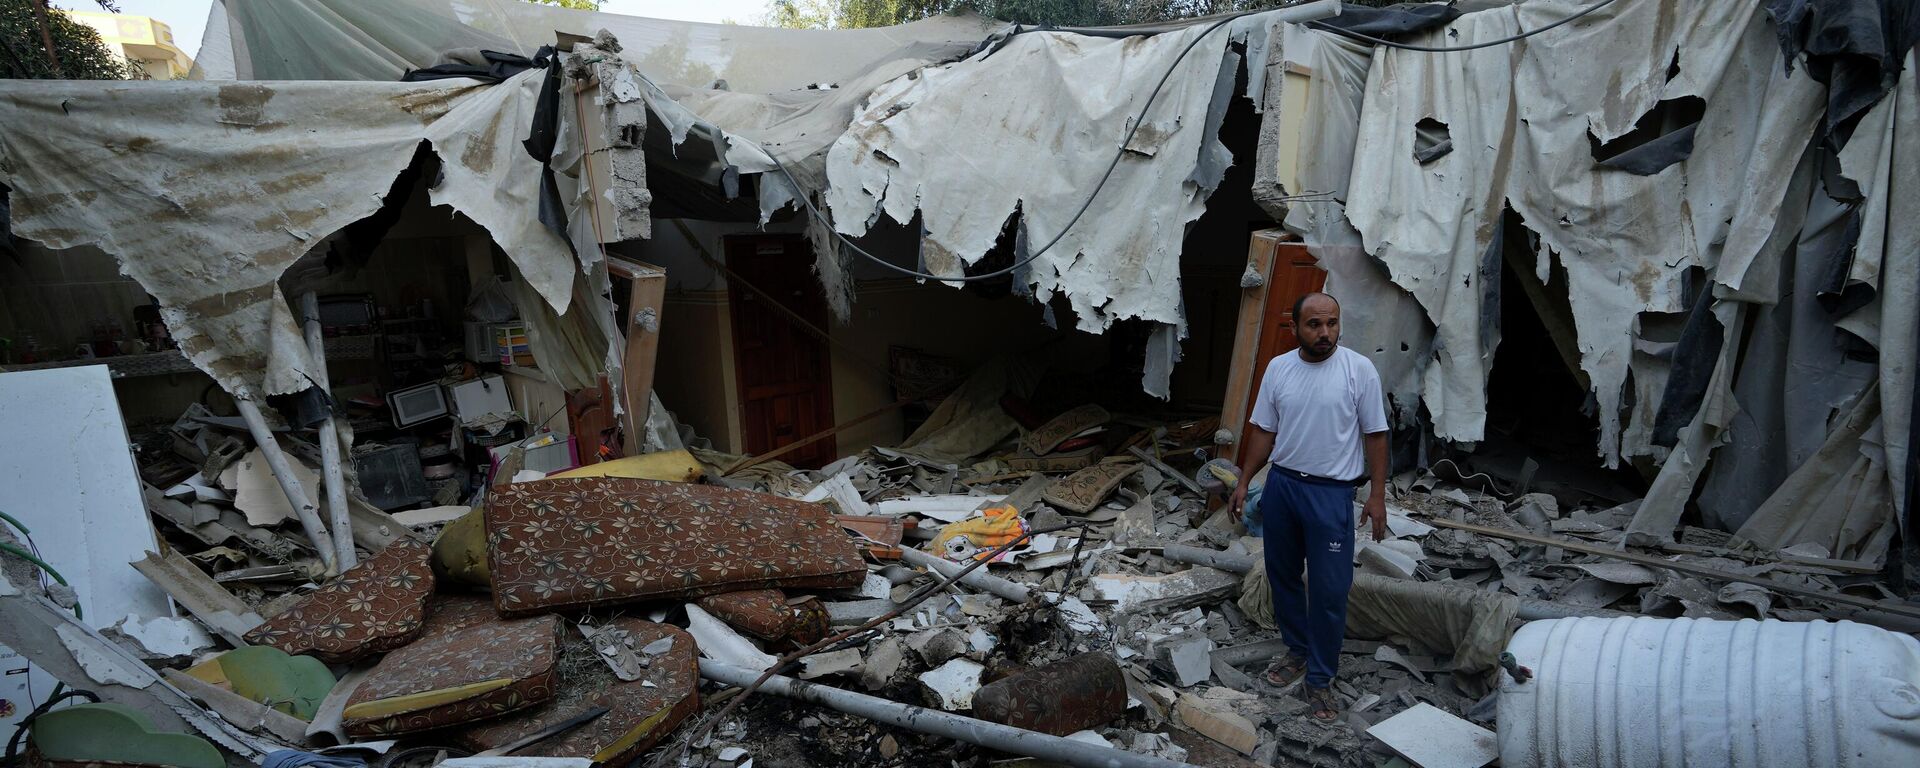 Rami Arada, inspecciona los escombros de la casa de su familia después de que fuera destruida por un ataque aéreo israelí, en el sur de la Franja de Gaza - Sputnik Mundo, 1920, 08.08.2022